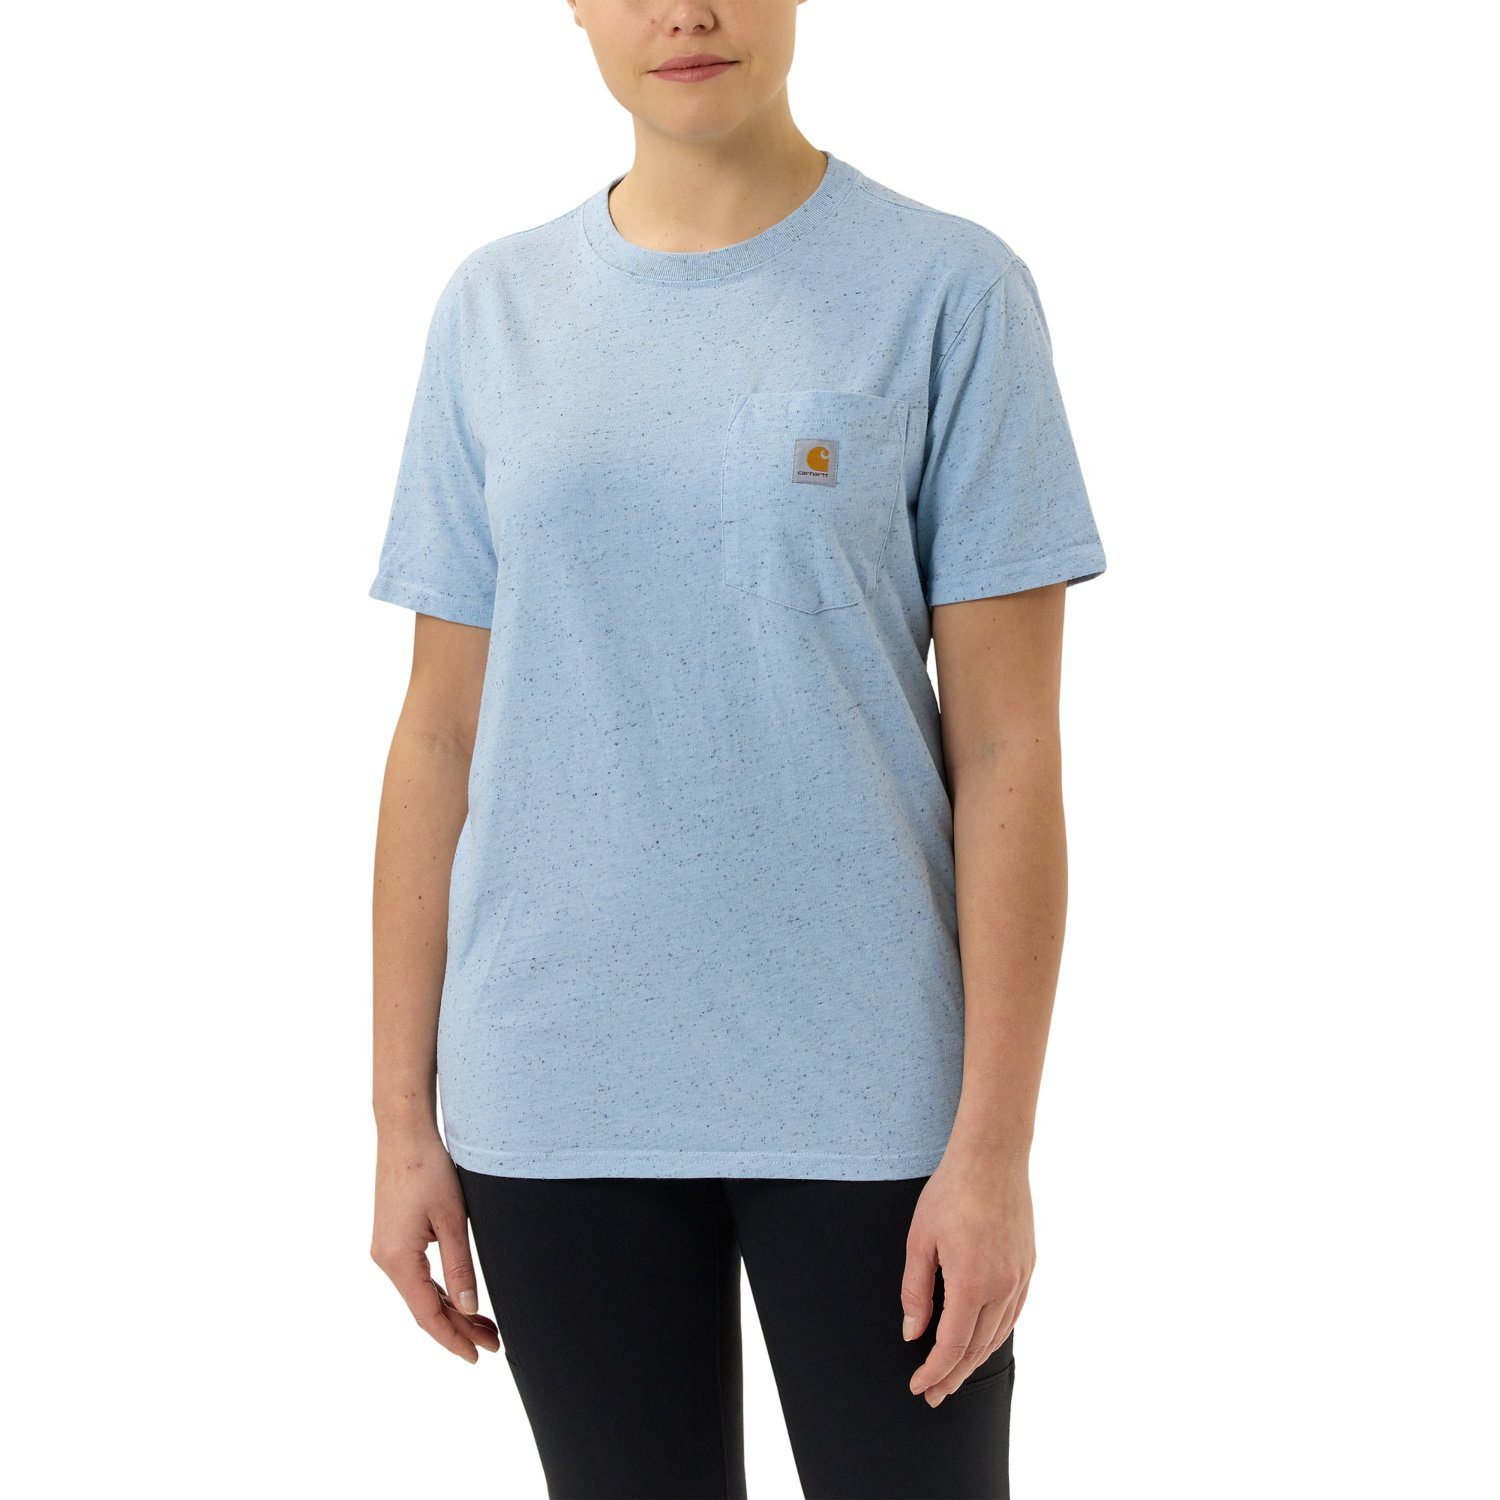 Heavyweight Carhartt Fit T-Shirt T-Shirt Pocket Adult blue powder nep Damen Carhartt Short-Sleeve Loose